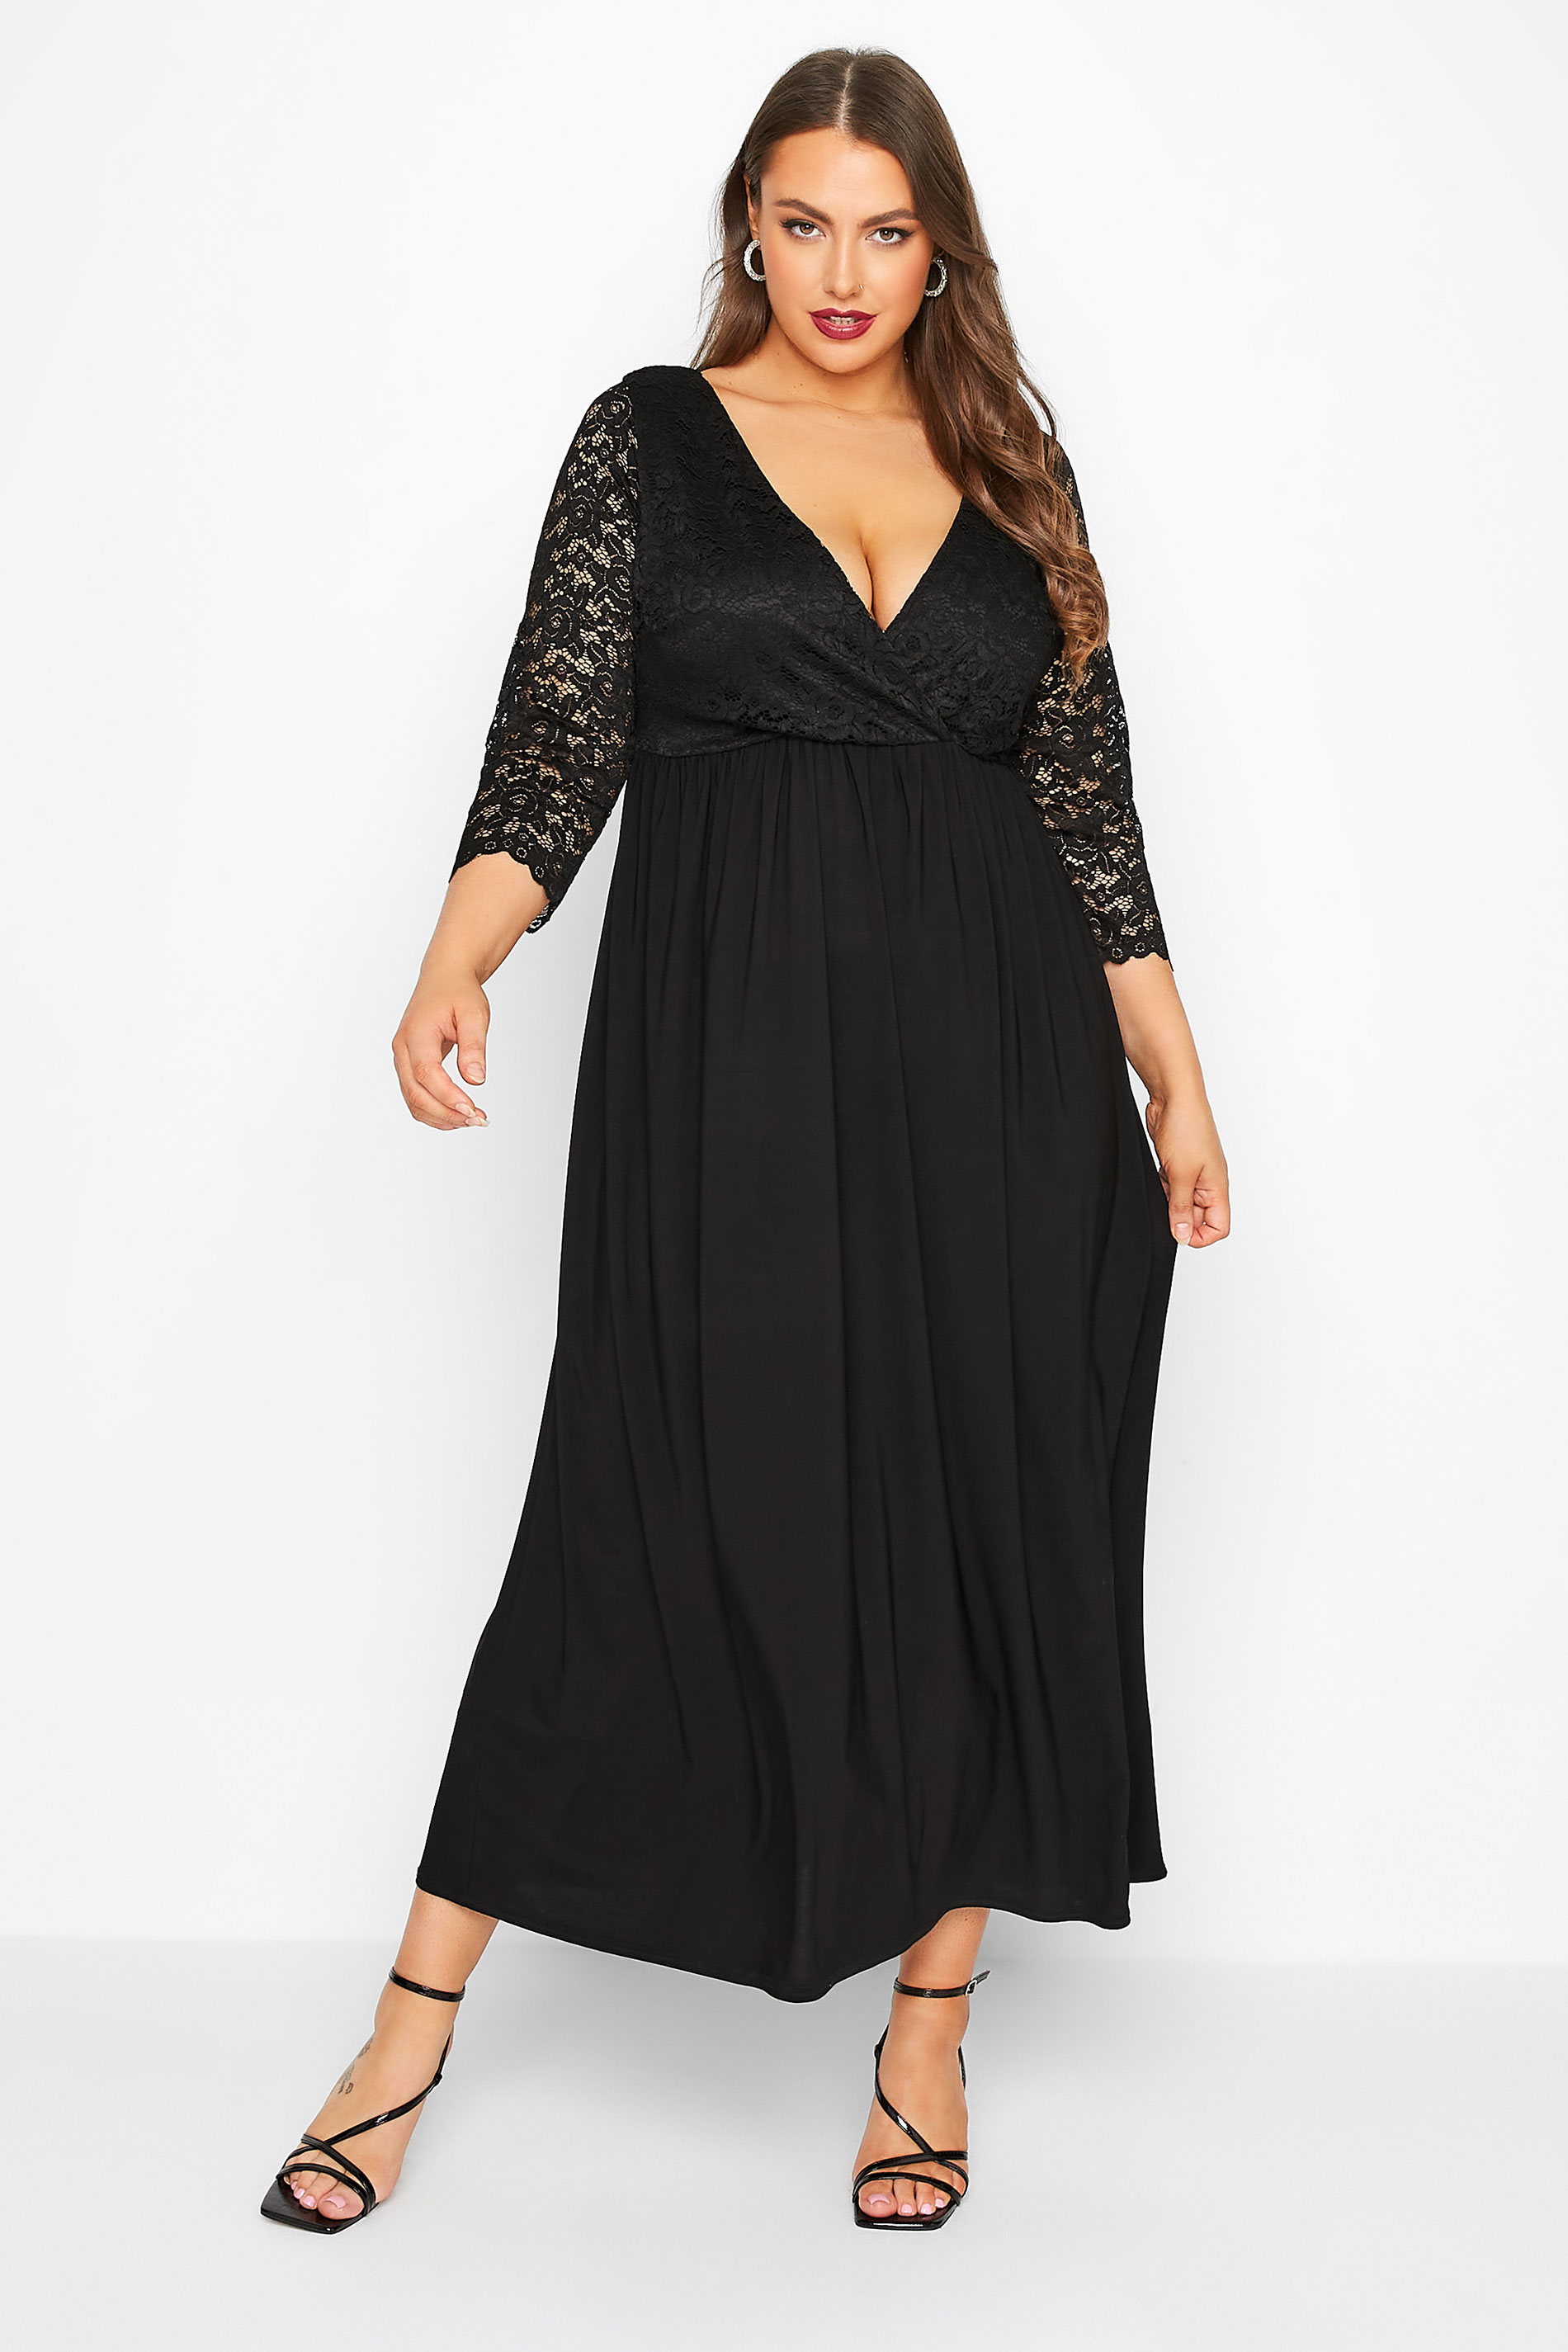 YOURS LONDON Plus Size Black Lace Wrap Maxi Dress